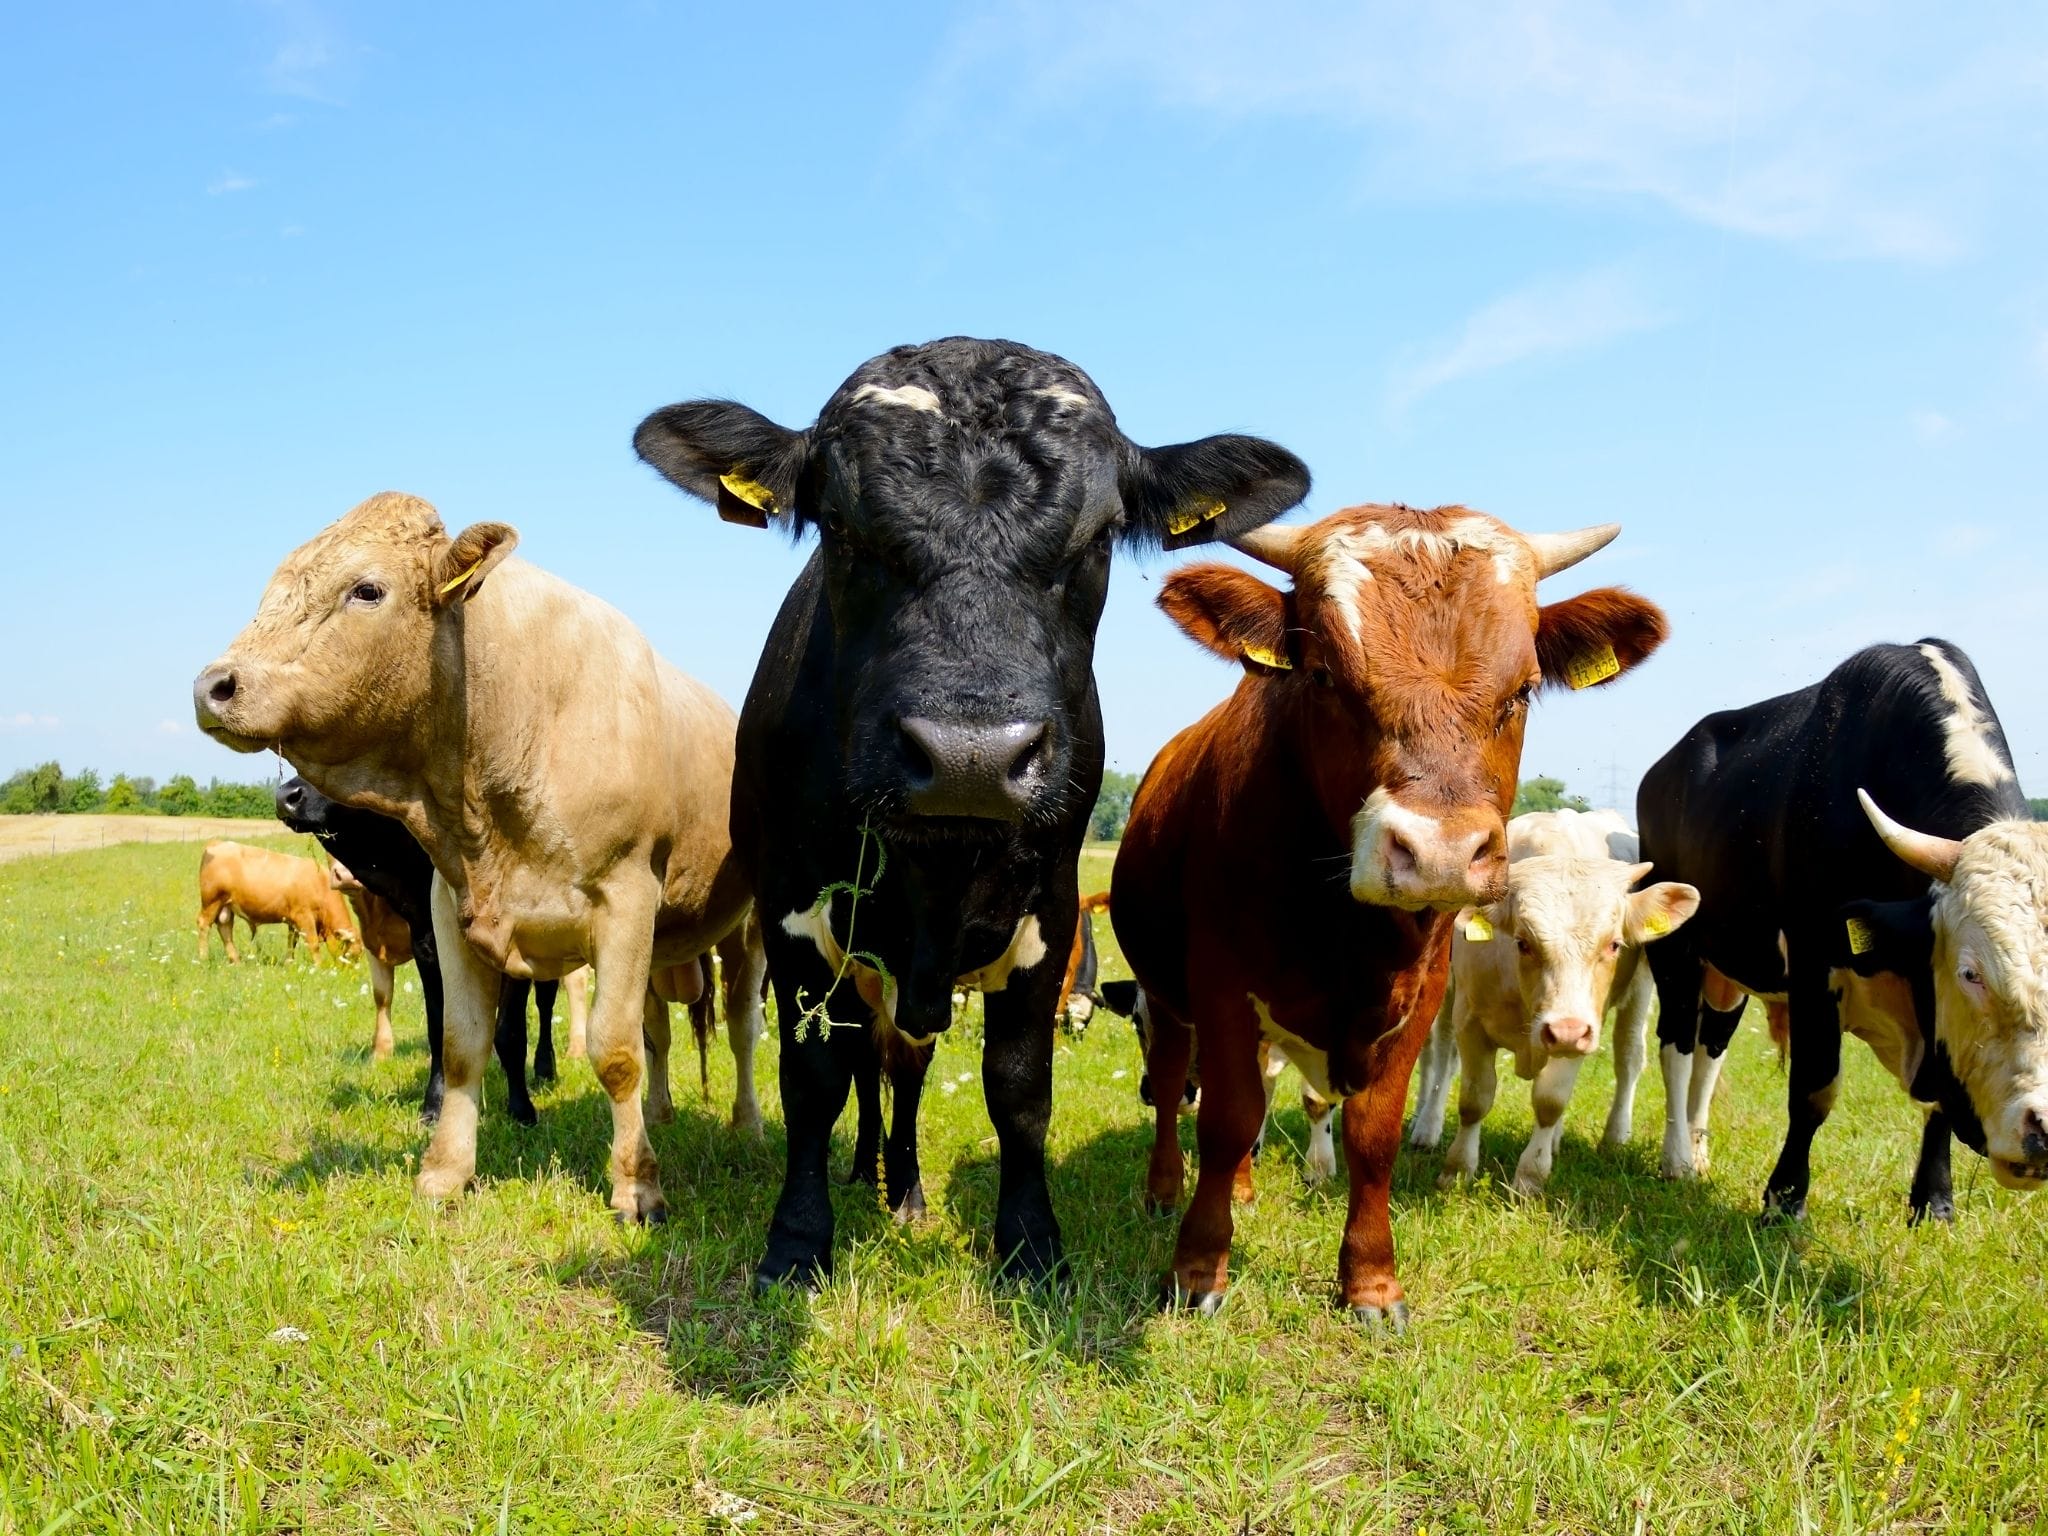 Alimentación ecológica vs convencional para ganado